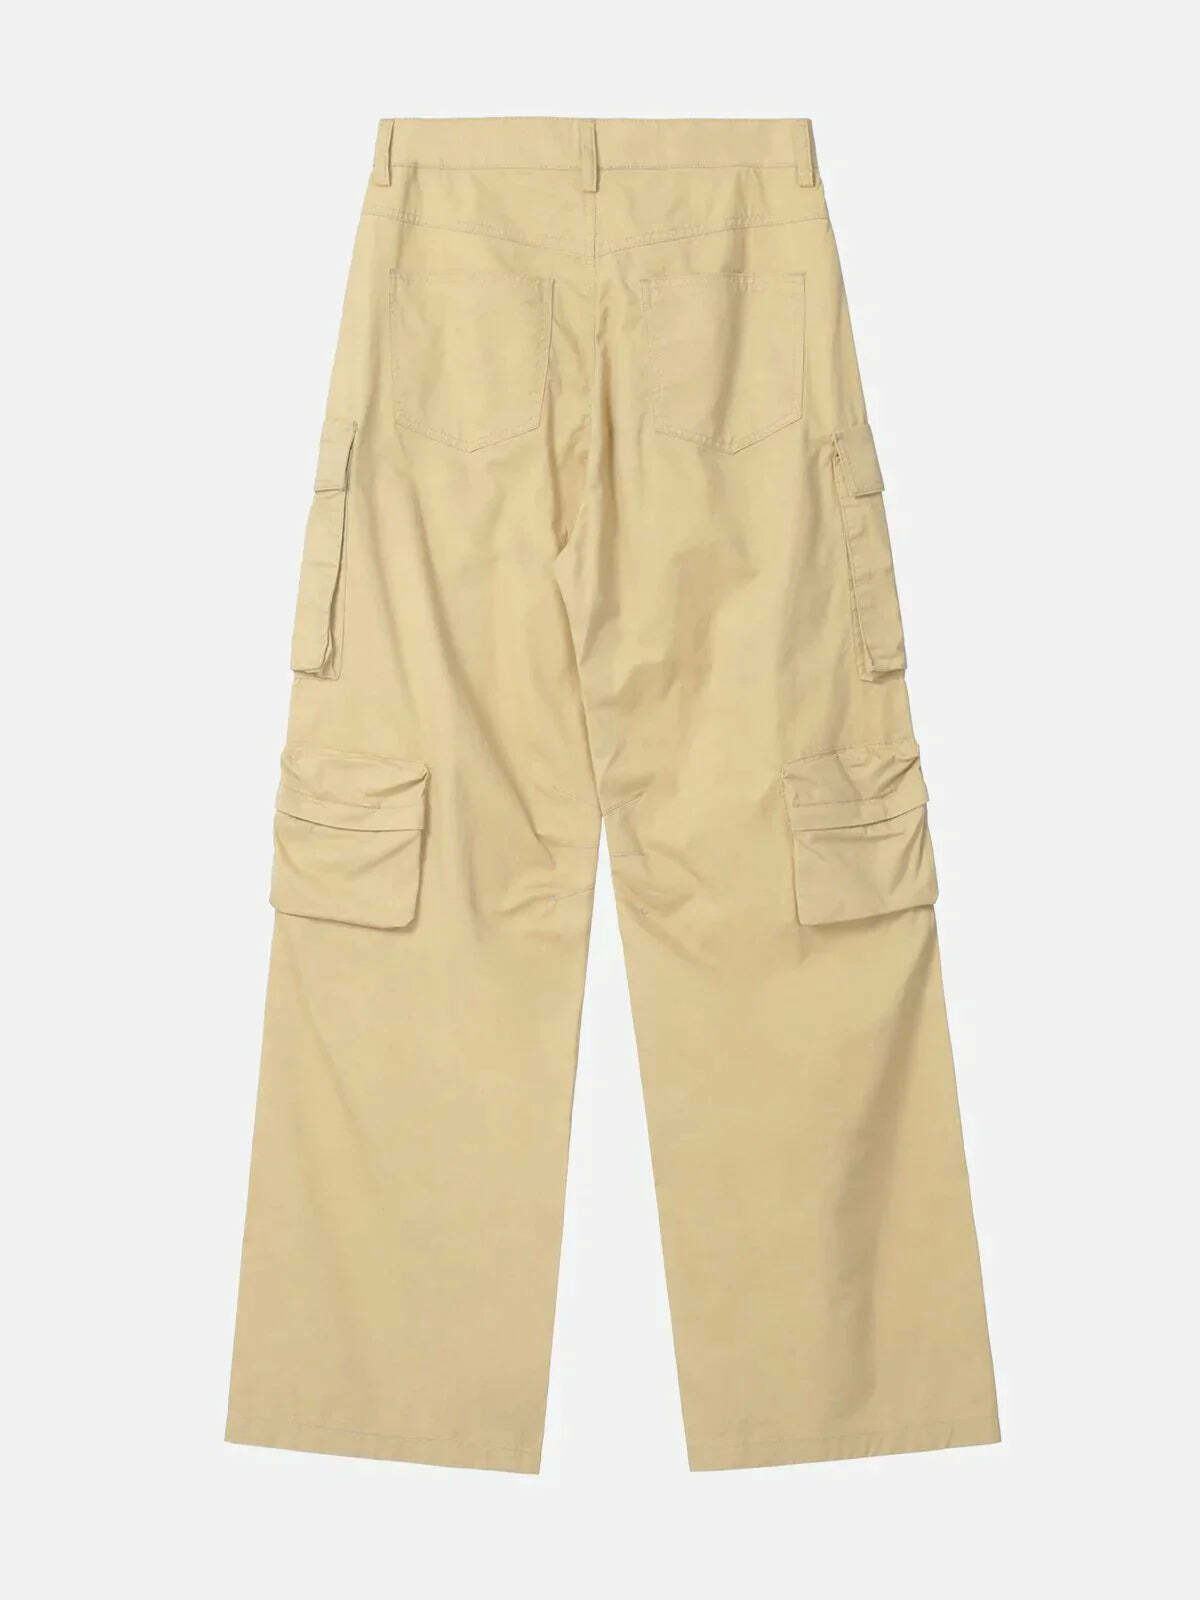 loose fit solid color pants effortlessly chic & versatile 1829